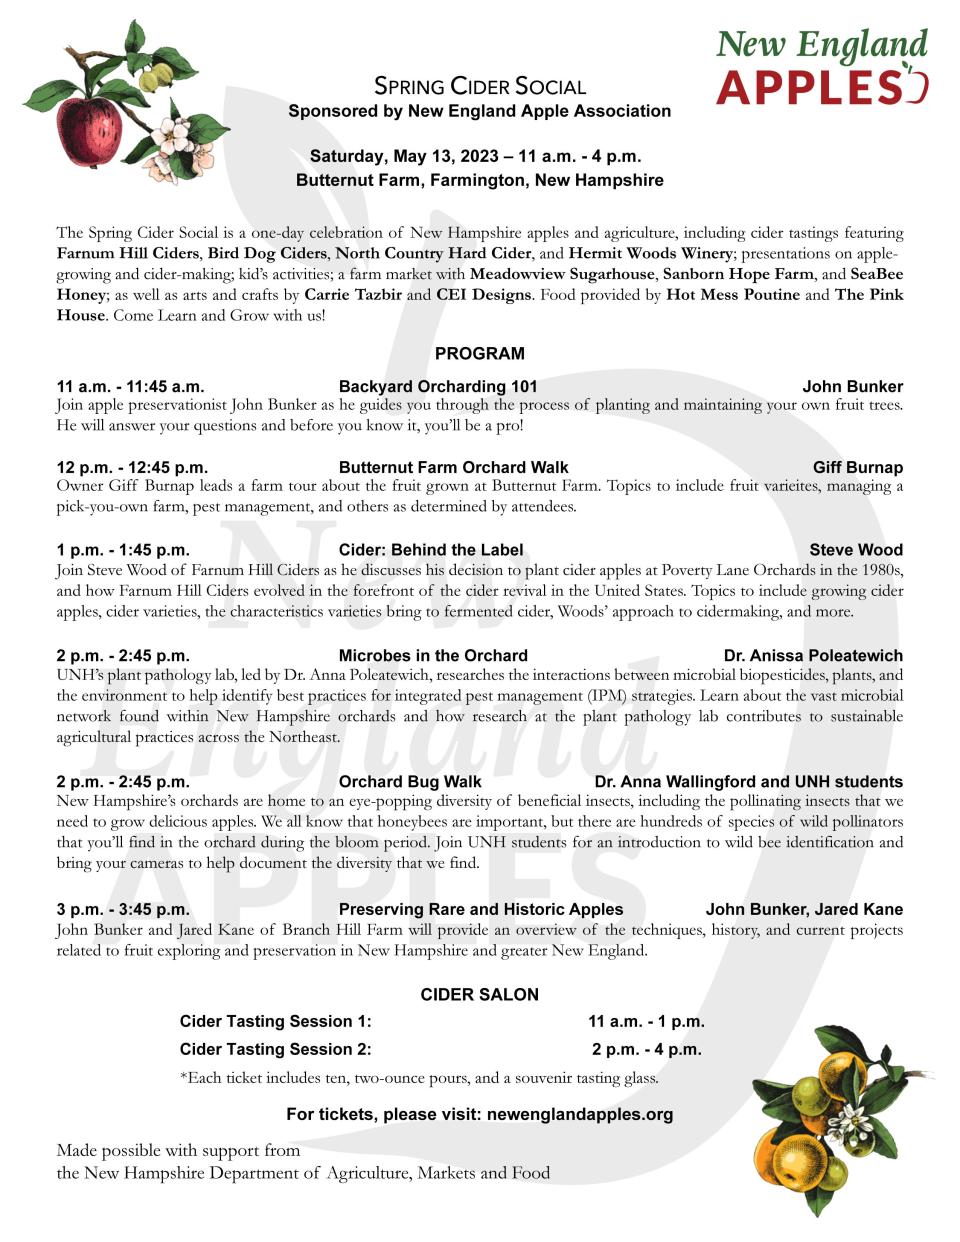 Butternut Farm's Spring Cider Social held Saturday, May 13, program lineup.